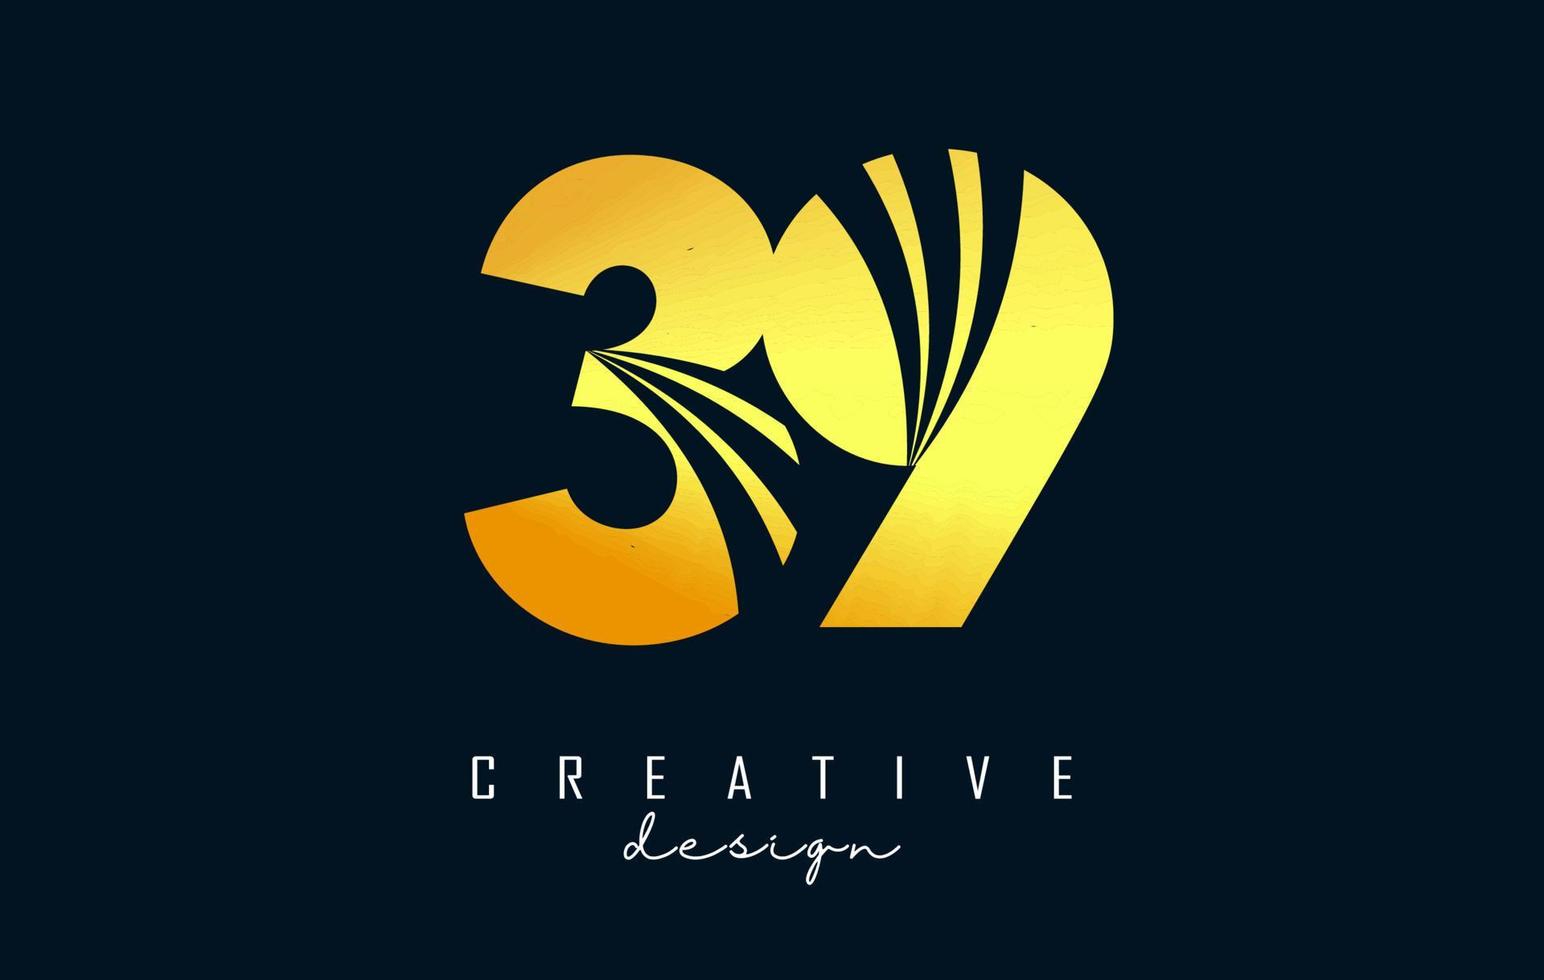 goldenes kreatives nummer 39 3 9 logo mit führenden linien und straßenkonzeptdesign. Nummer mit geometrischem Design. vektor